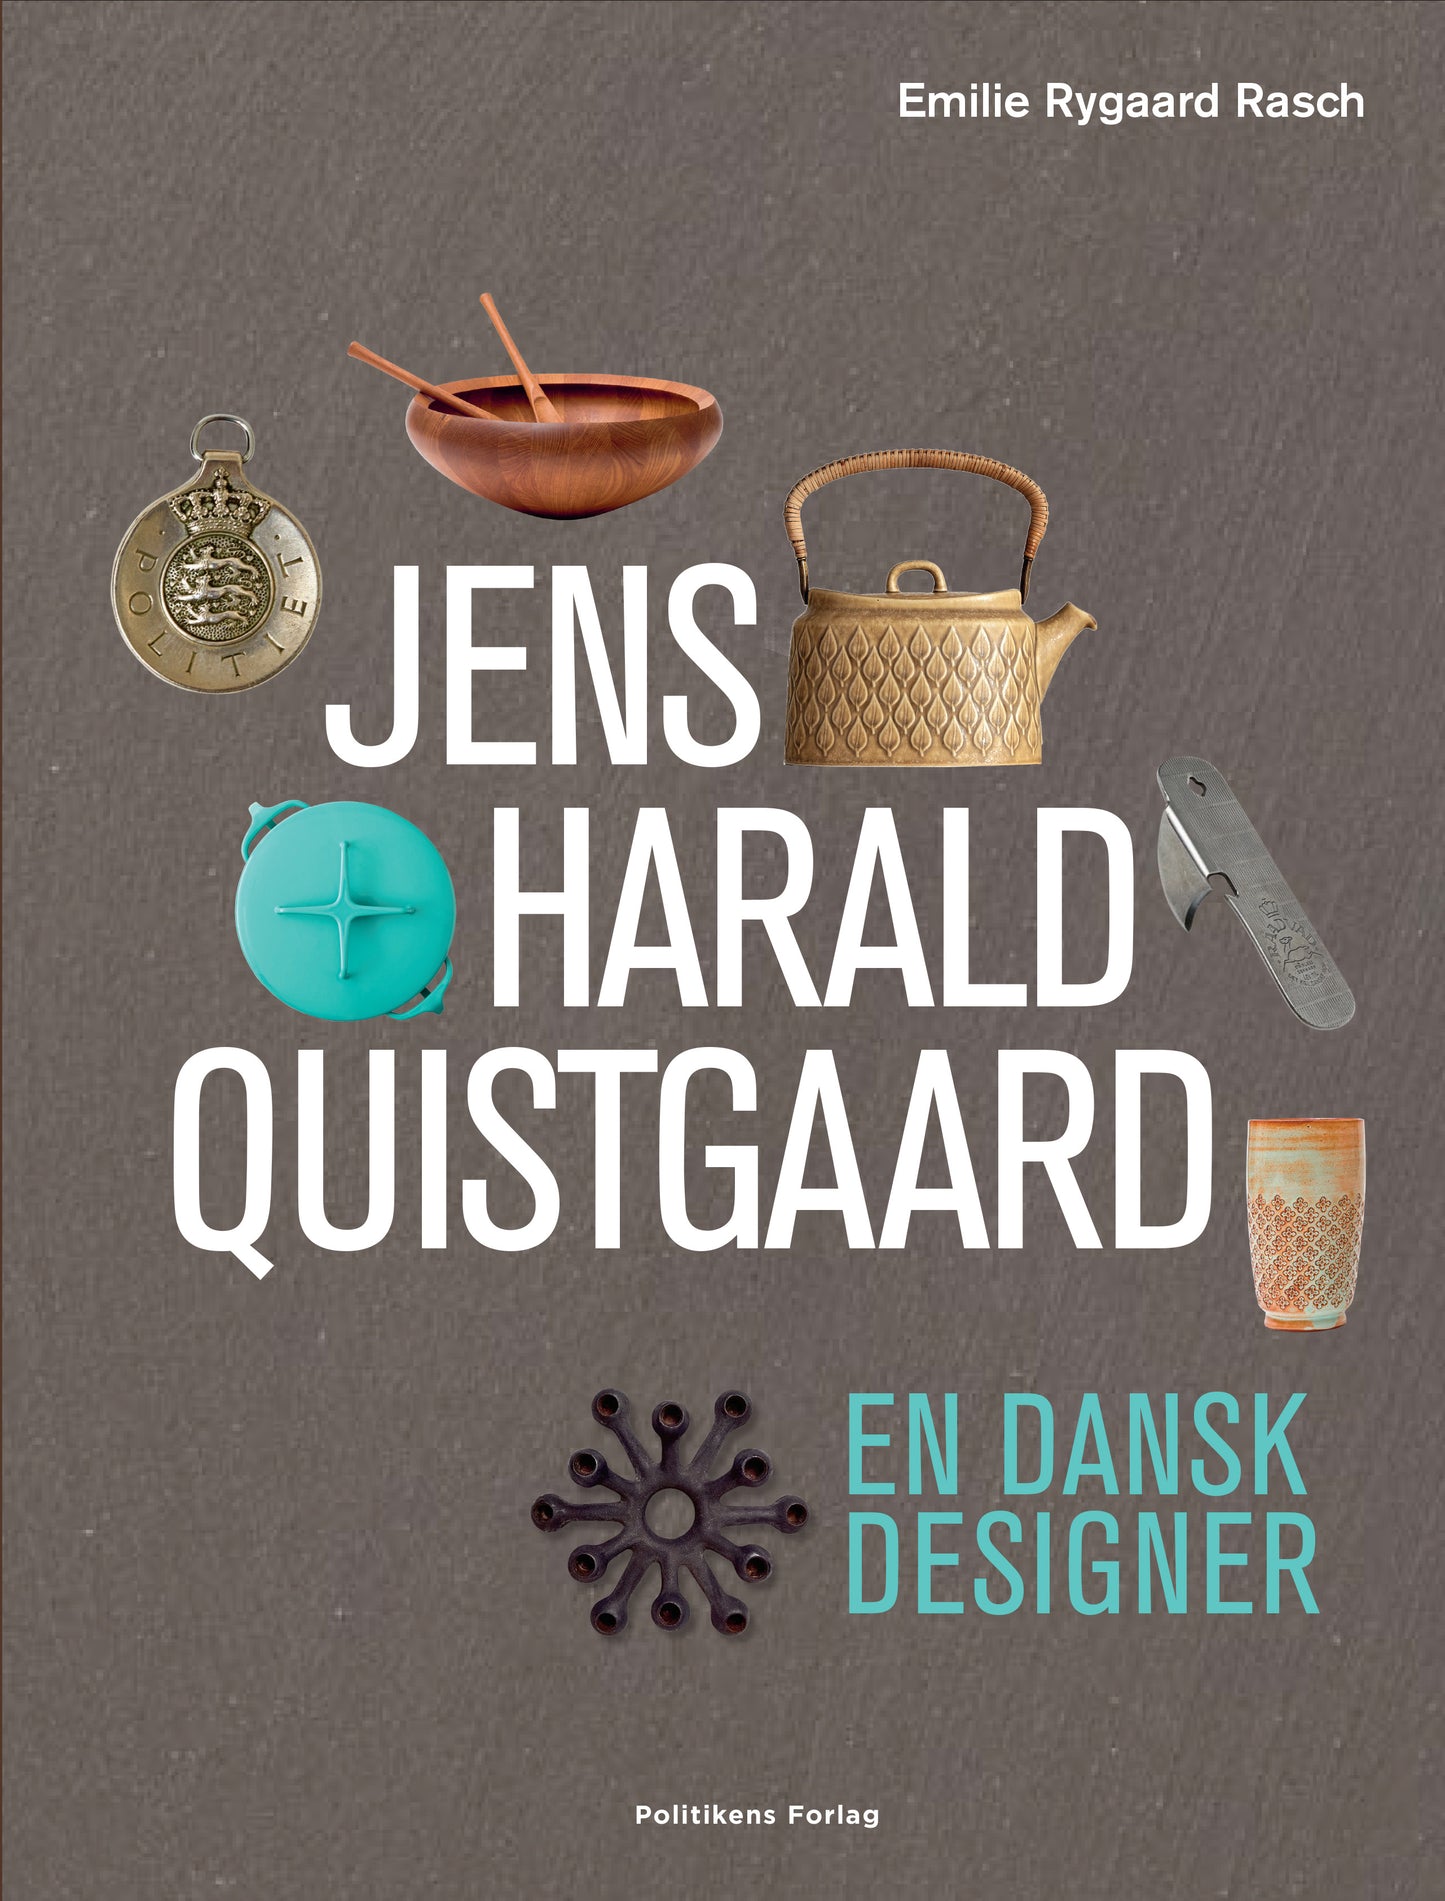 Jens Harald Quistgaard